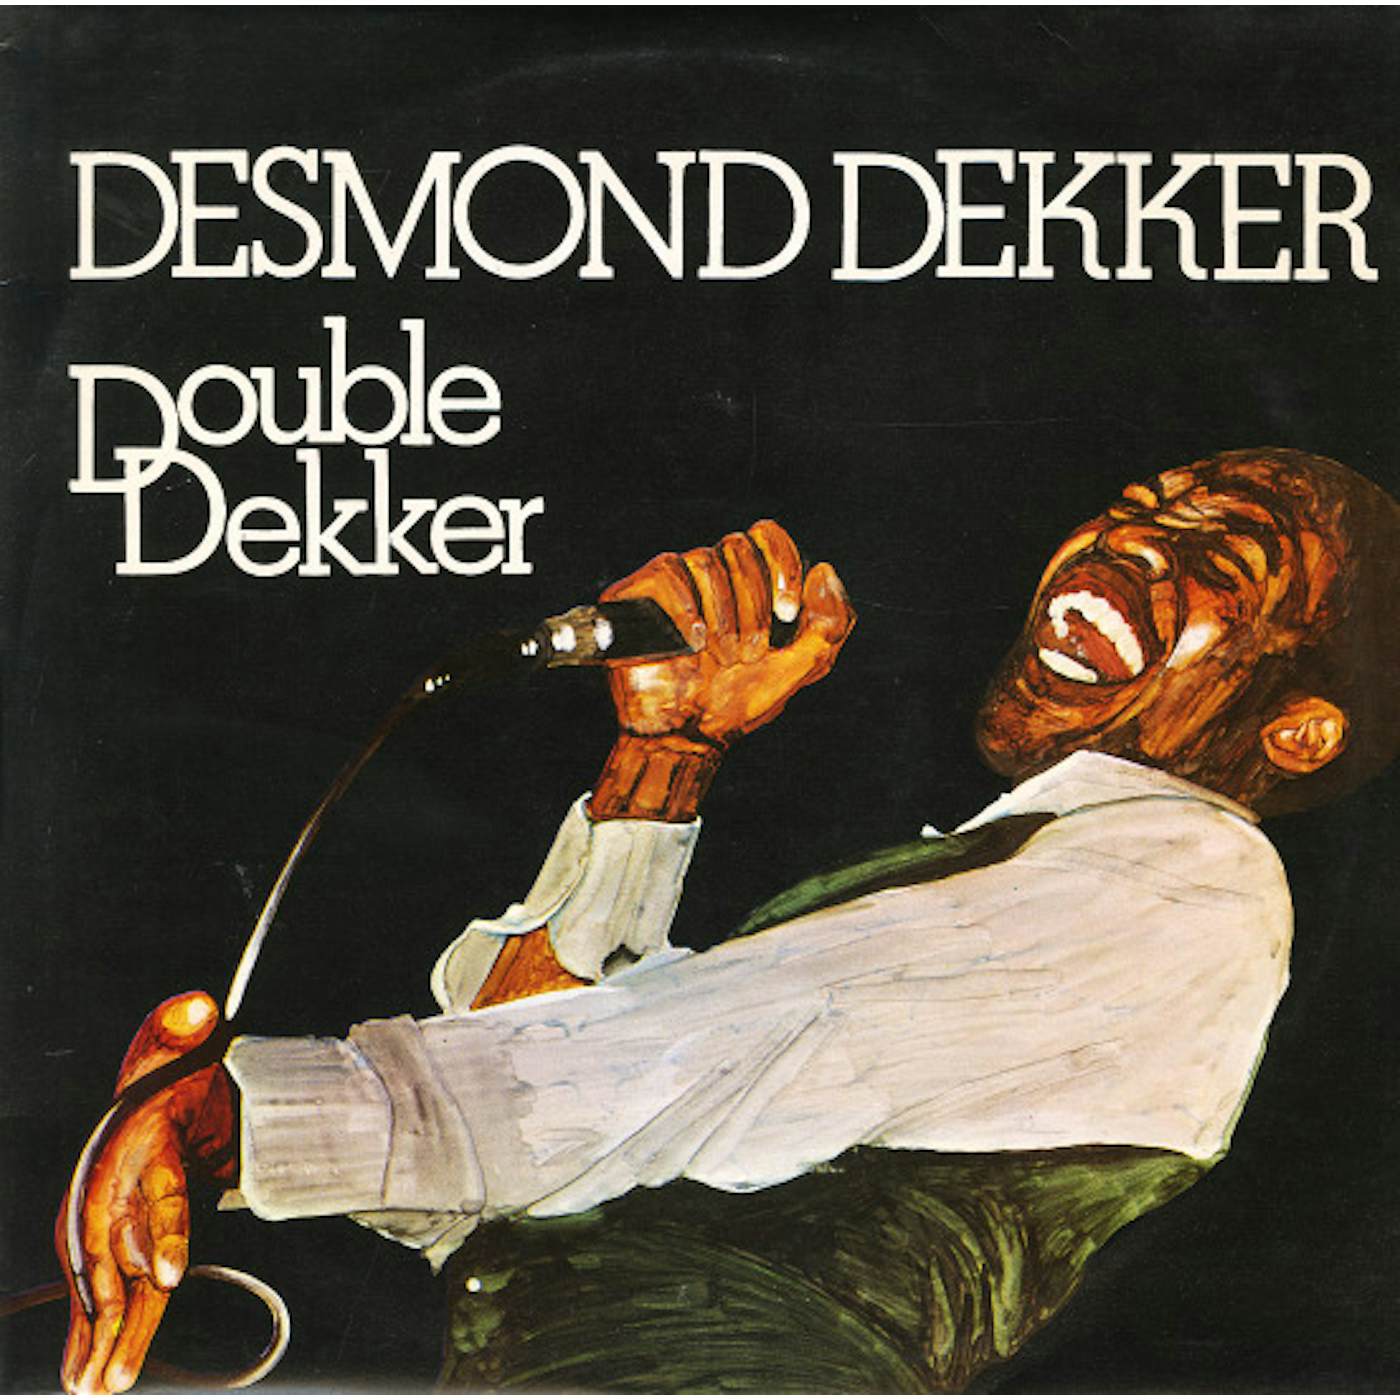 Desmond Dekker Double Dekker Vinyl Record